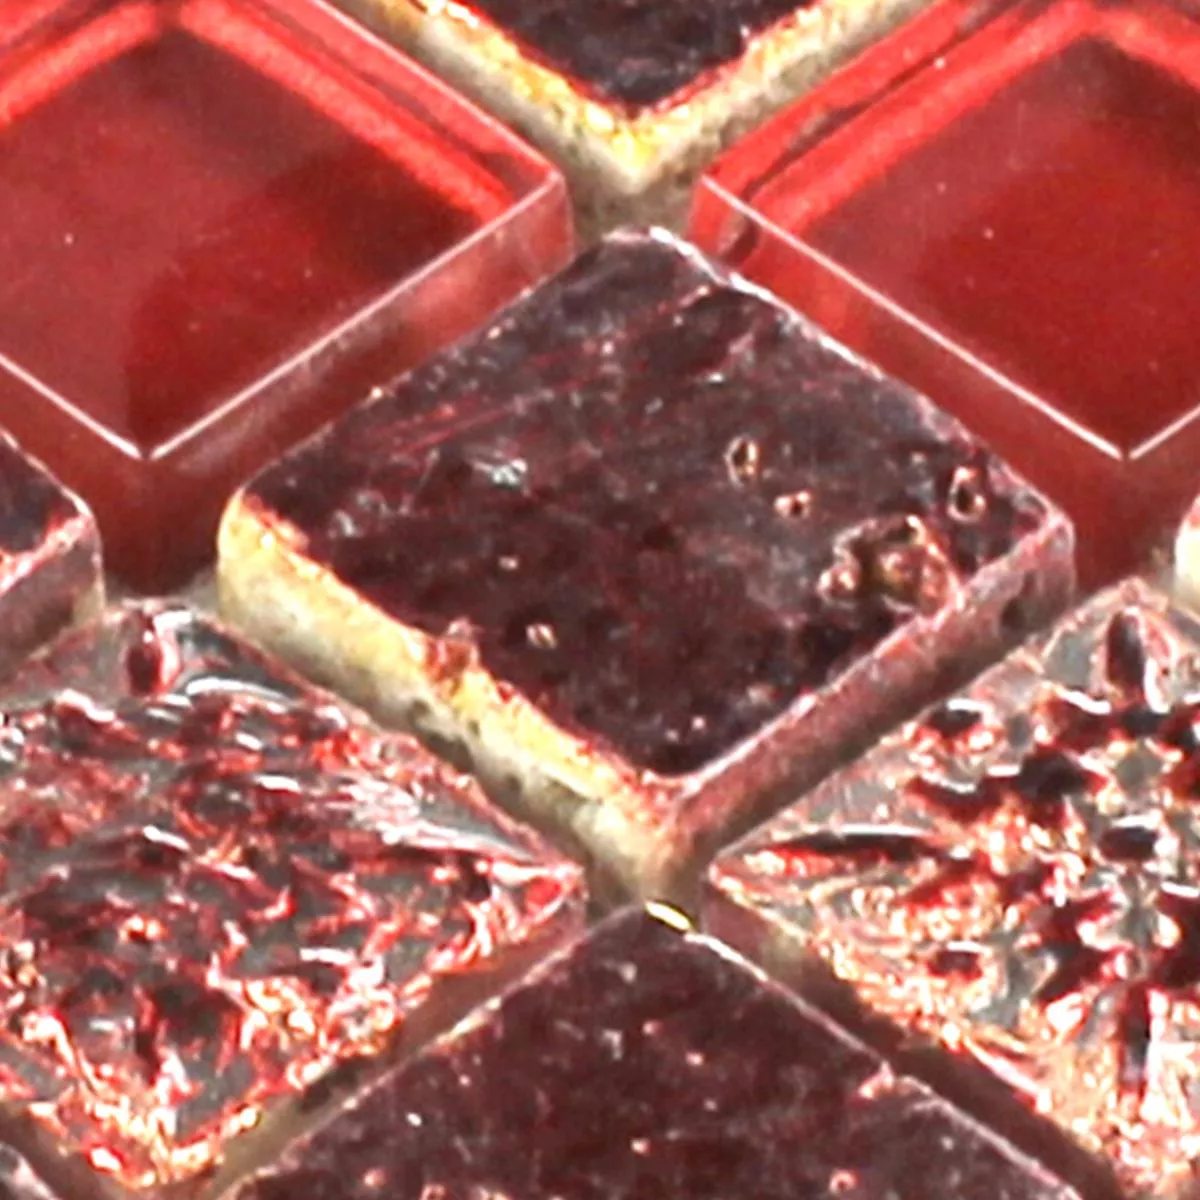 Muster von Mosaikfliesen Glas Kalkstein Marmor Lava Rot Duo